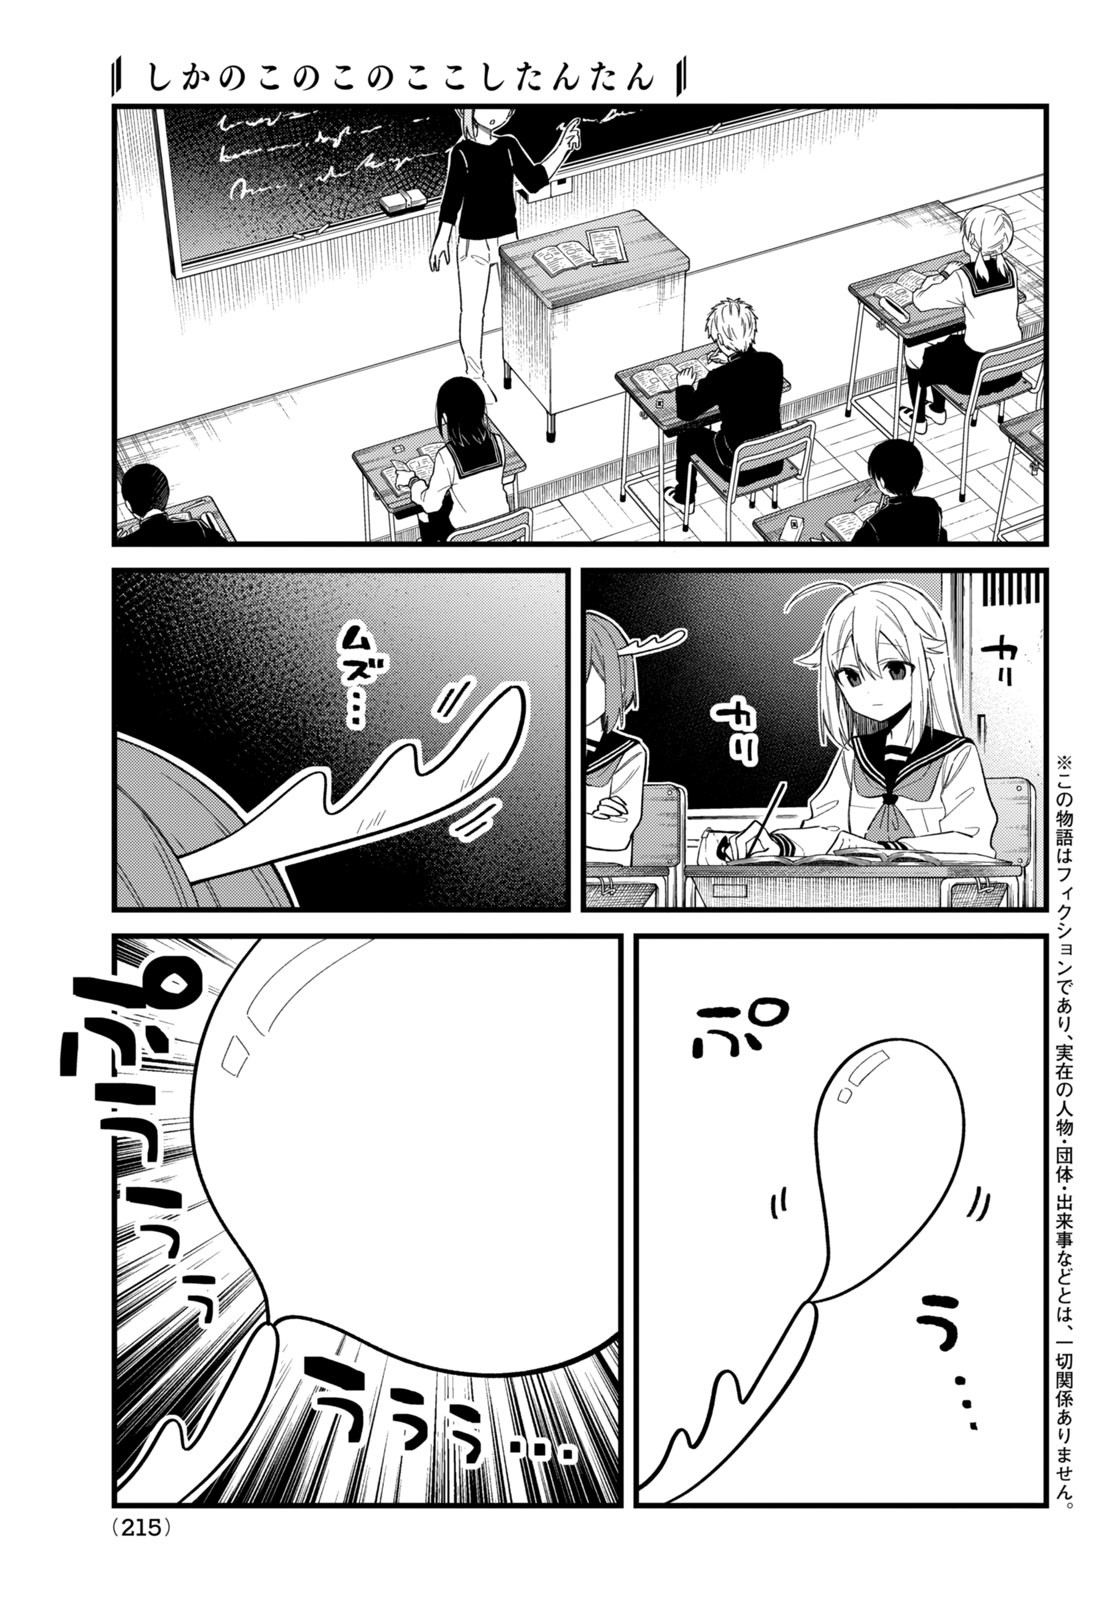 Shikanoko Nokonoko Koshitantan - Chapter 29 - Page 1